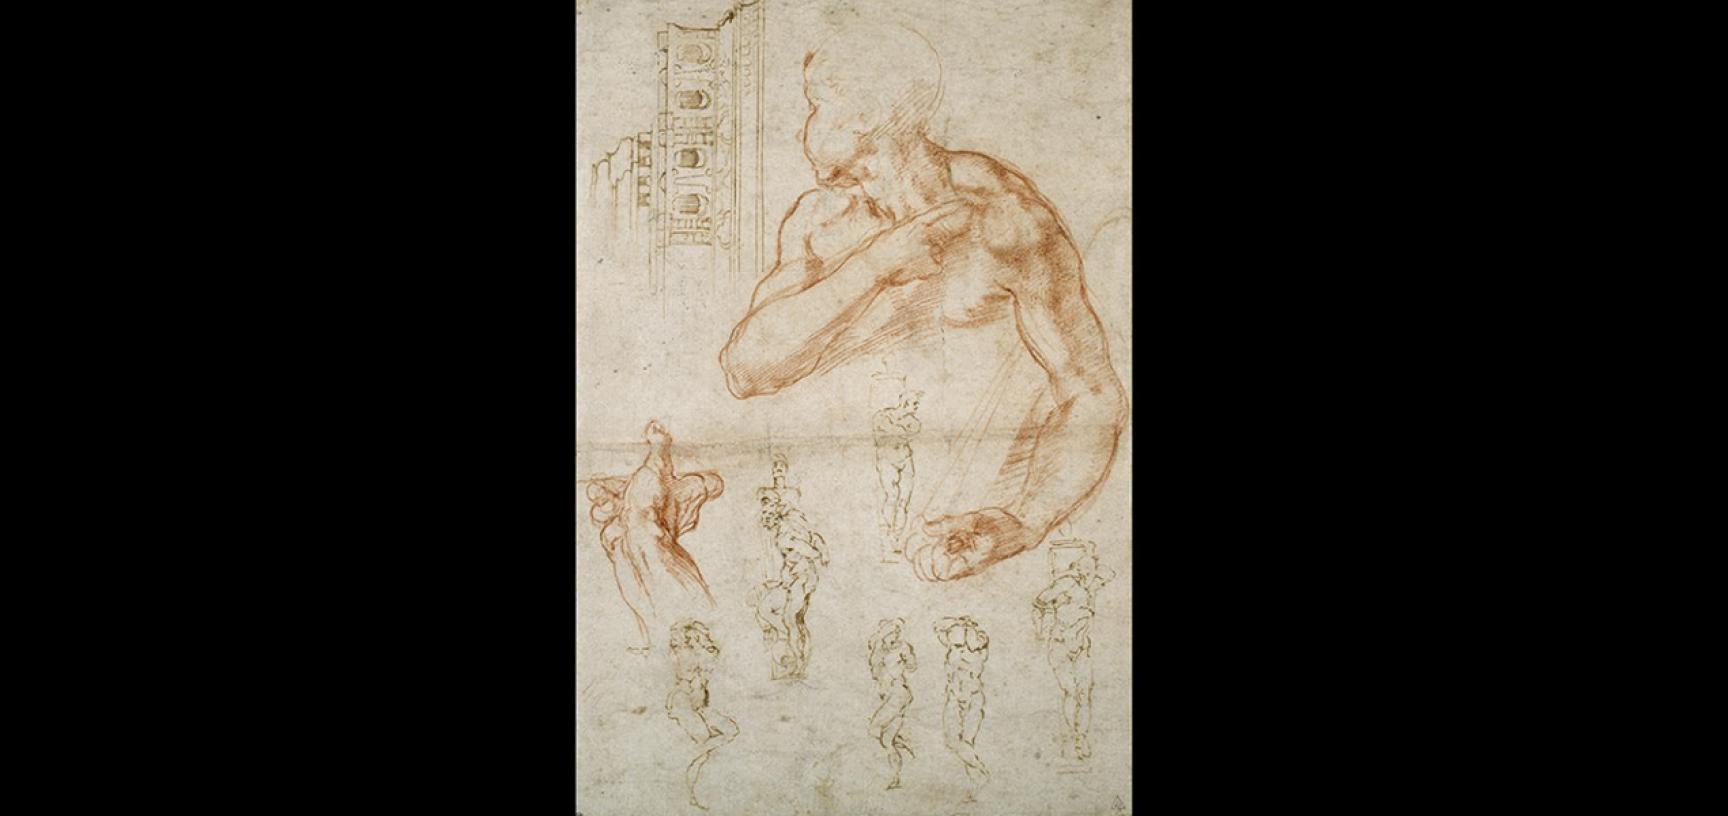 Michelangelo's studies by Michelangelo Buonarroti